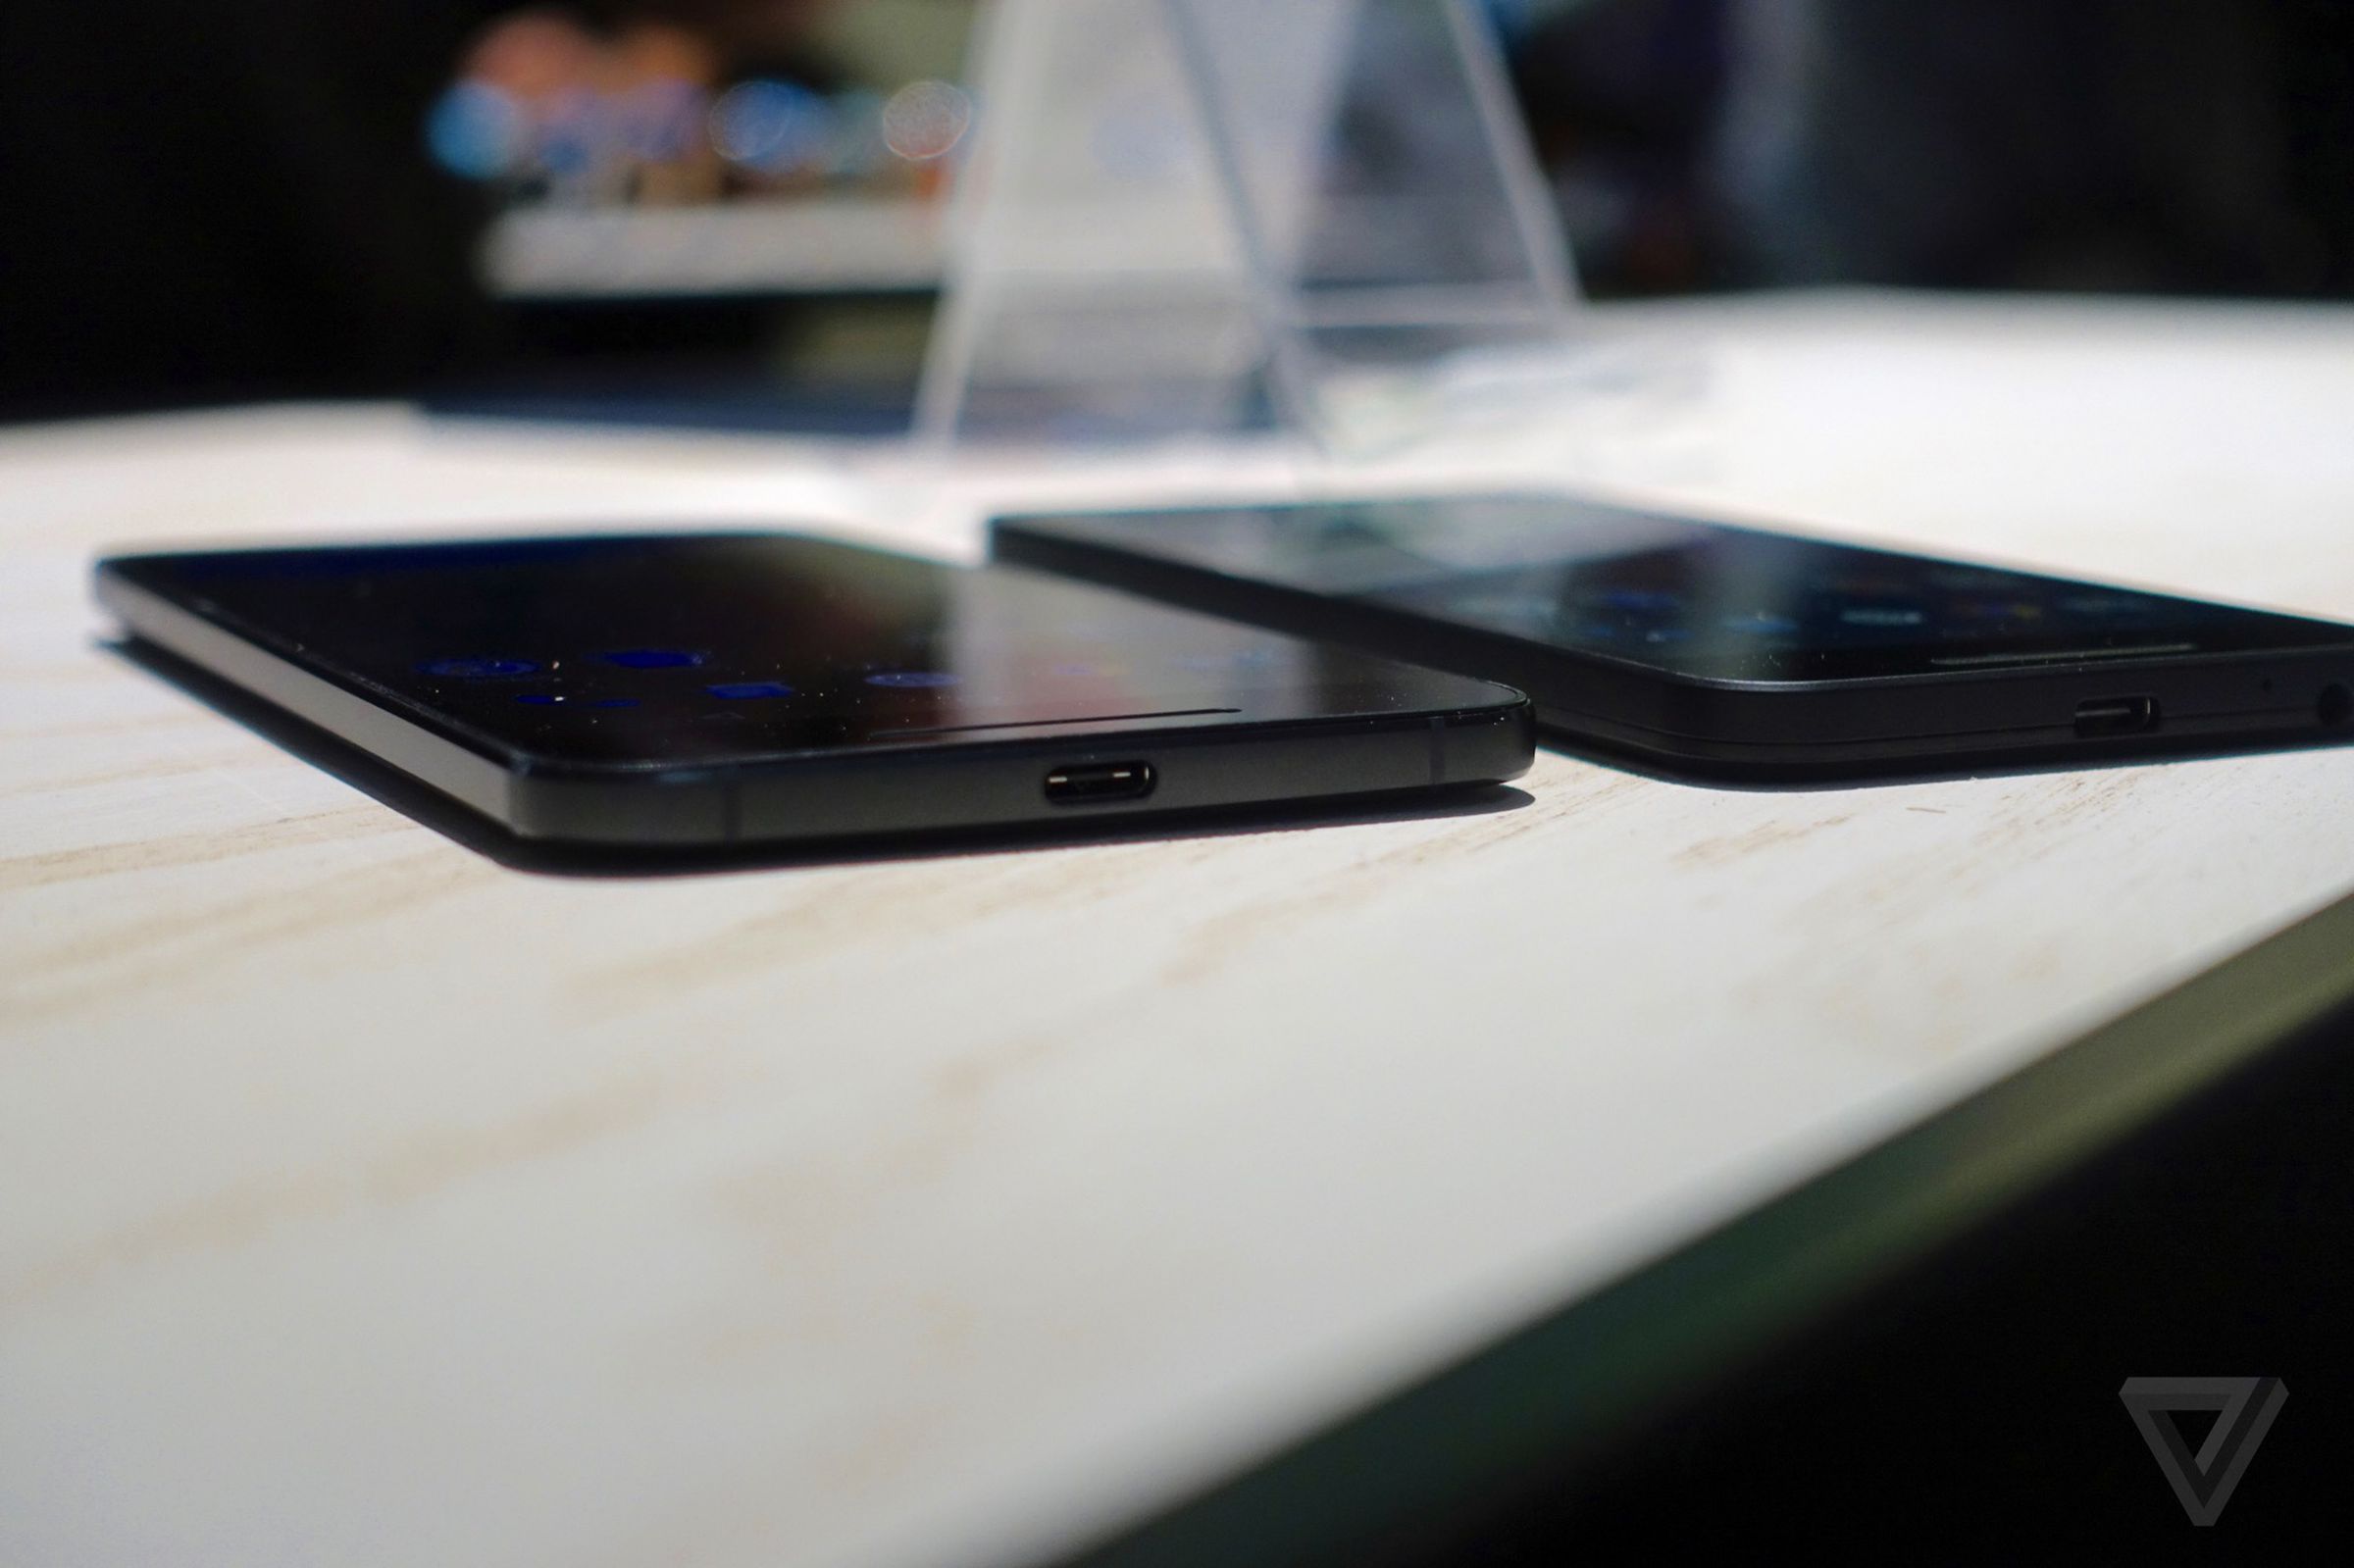 Hands on with new Nexus 6P smartphone